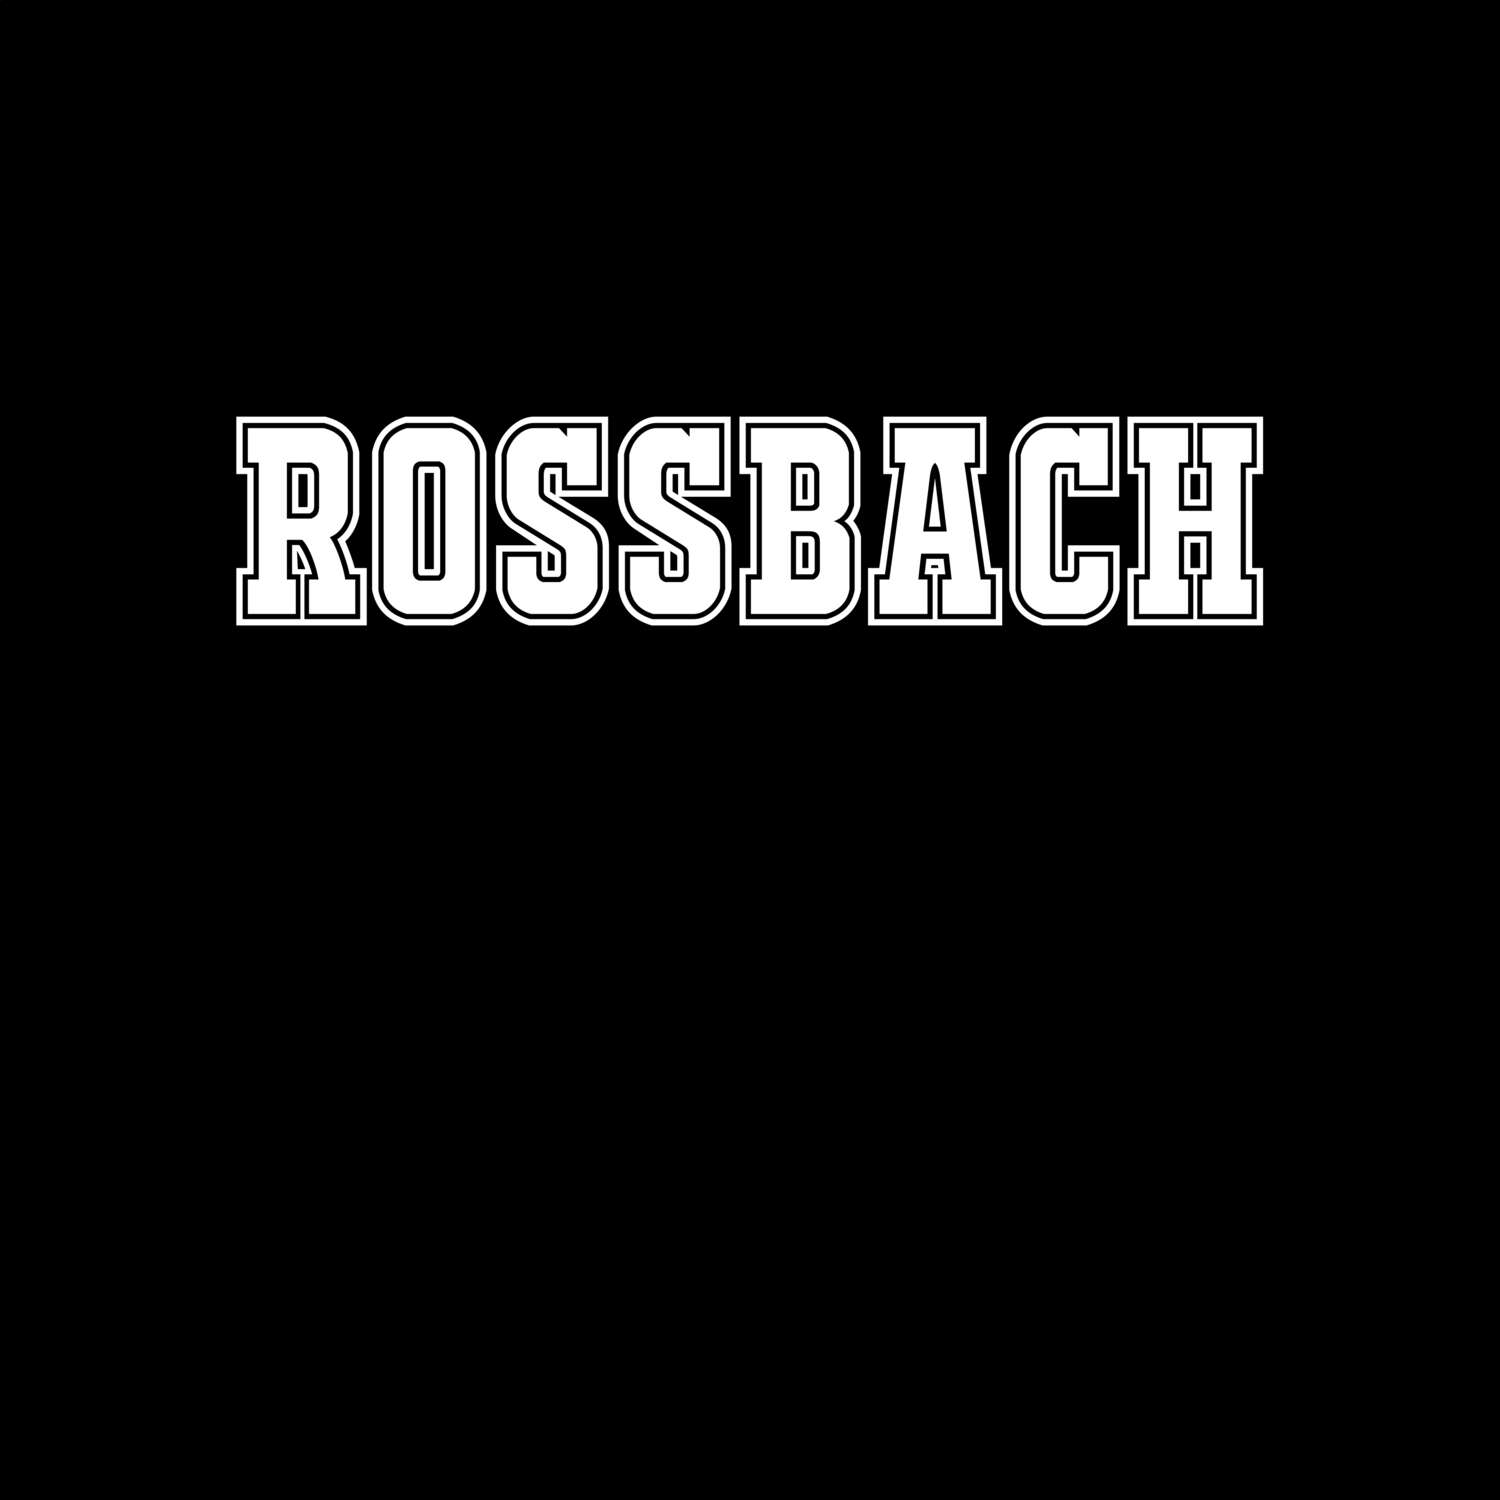 Roßbach T-Shirt »Classic«